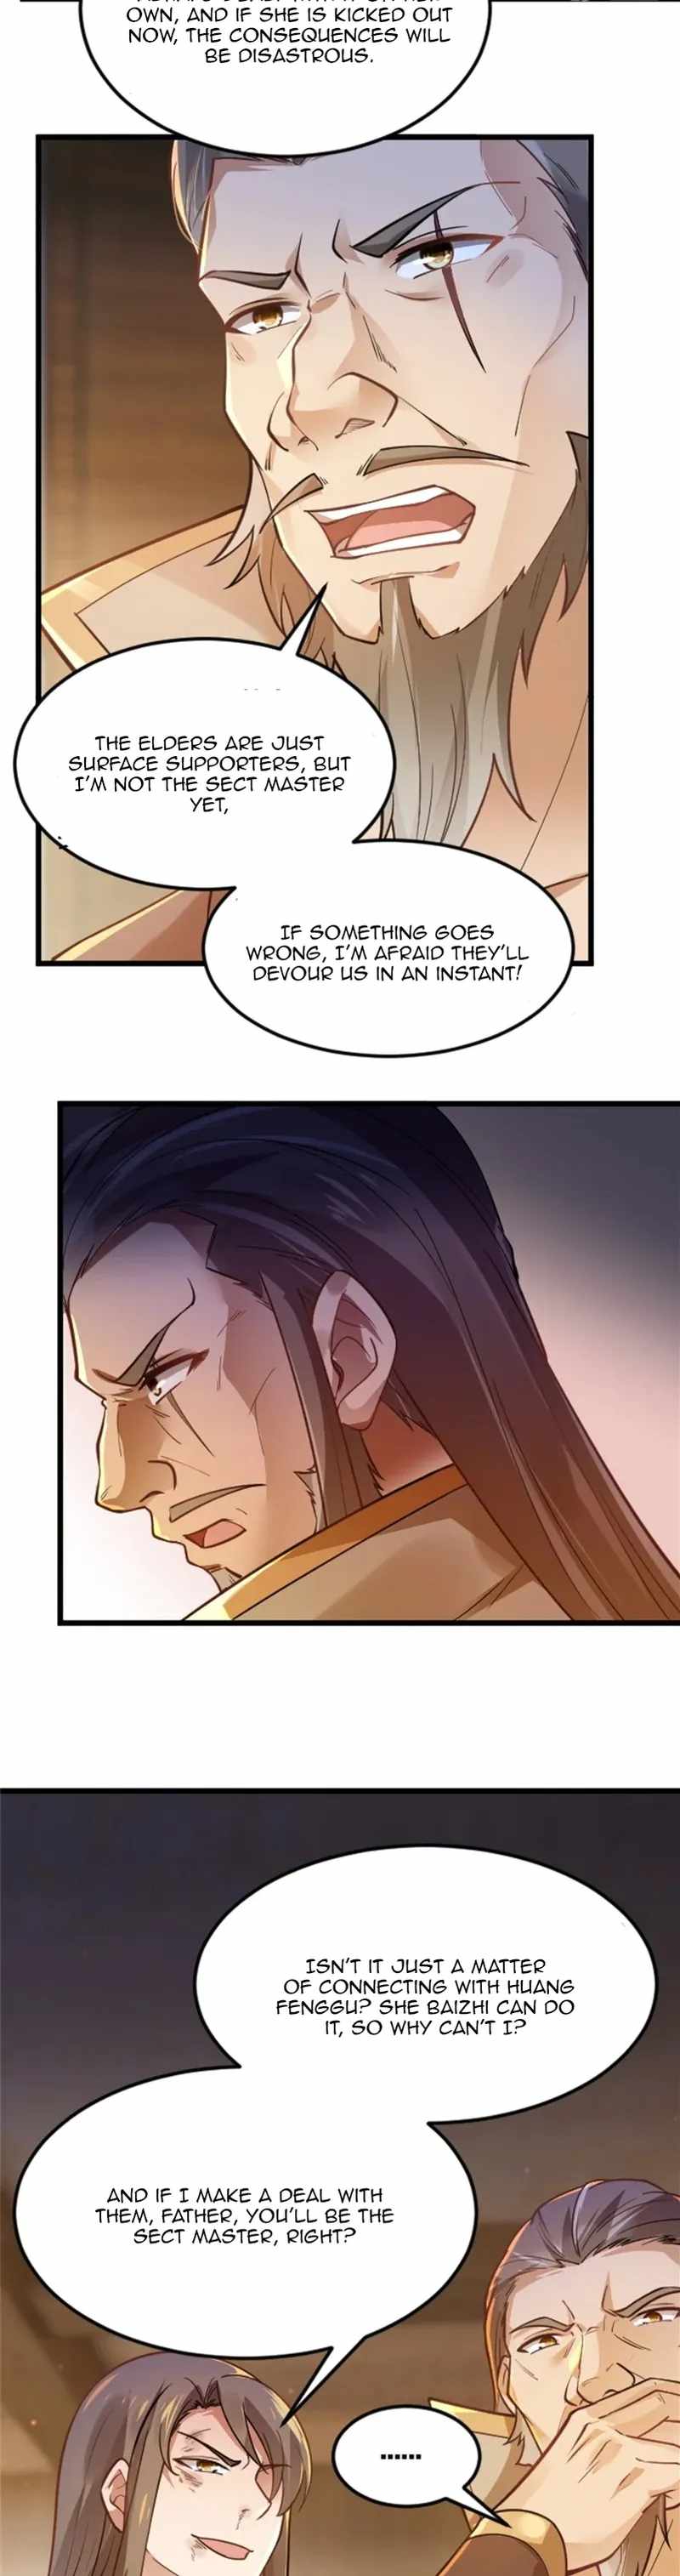 Sword Emperor As Son-In-Law - Page 4